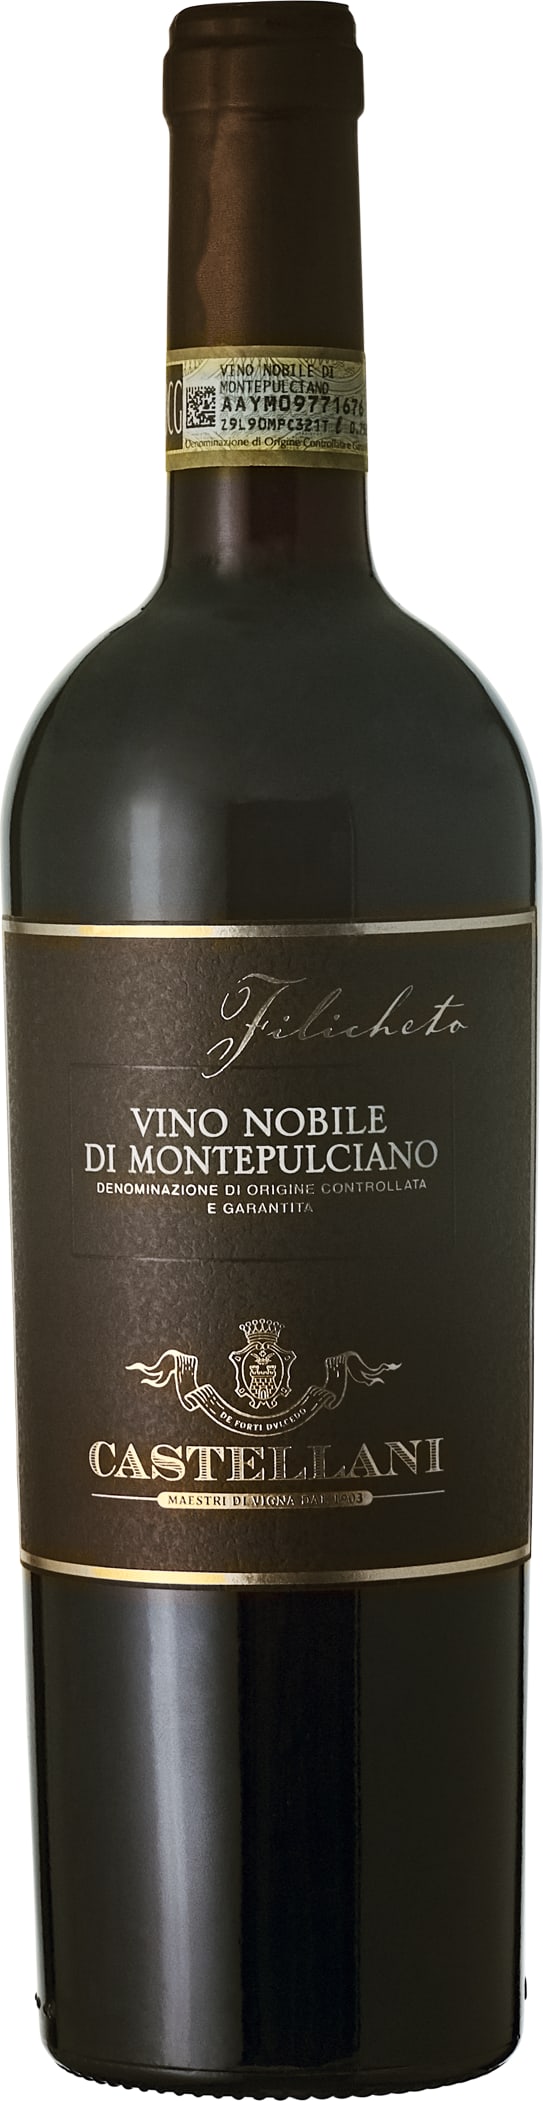 Castellani Filicheto Vino Nobile di Montepulciano DOCG 2018 75cl - Buy Castellani Wines from GREAT WINES DIRECT wine shop